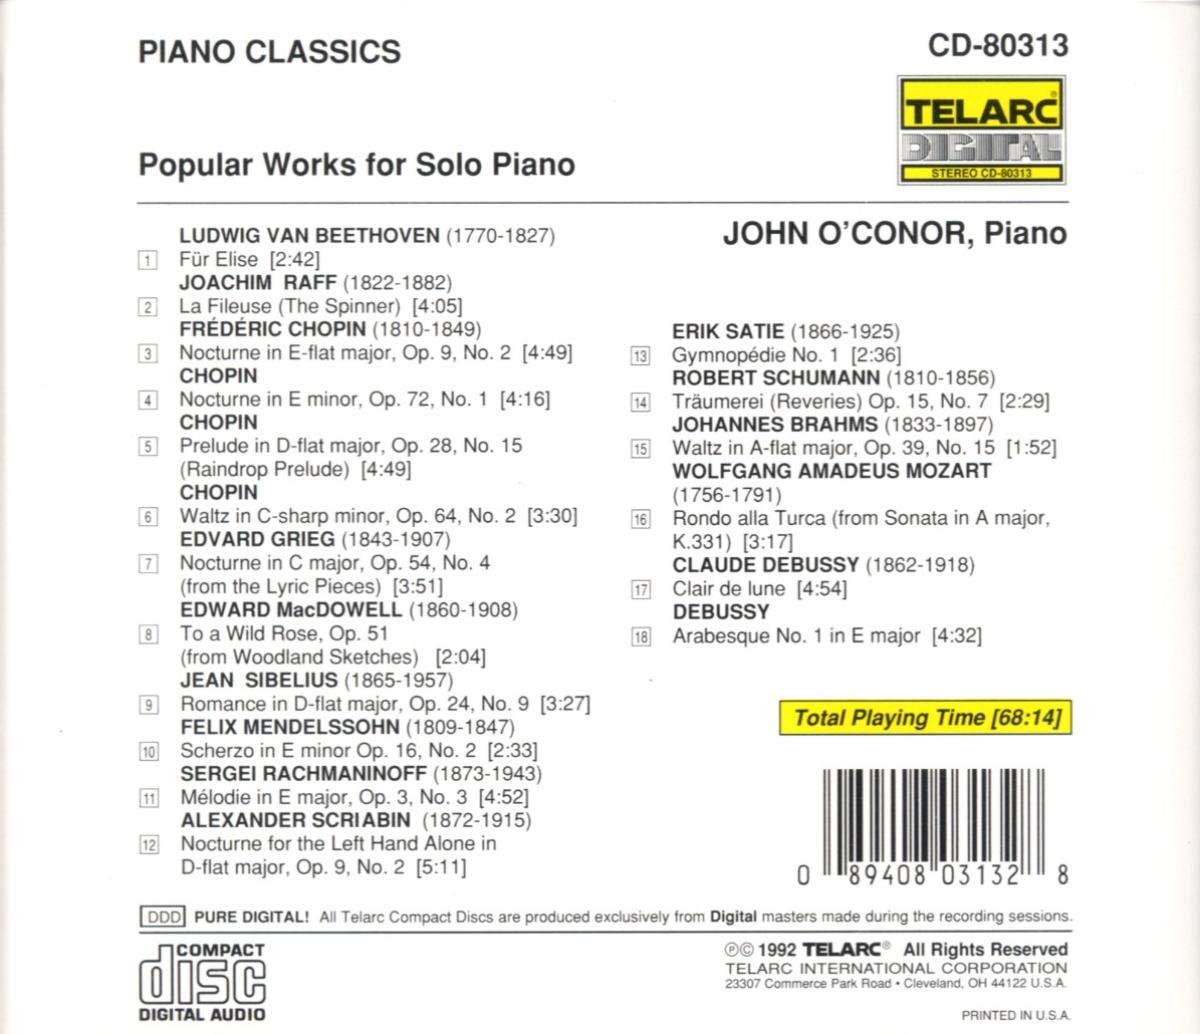 PIANO CLASSICS: Popular Works for Solo Piano - John O'Conor